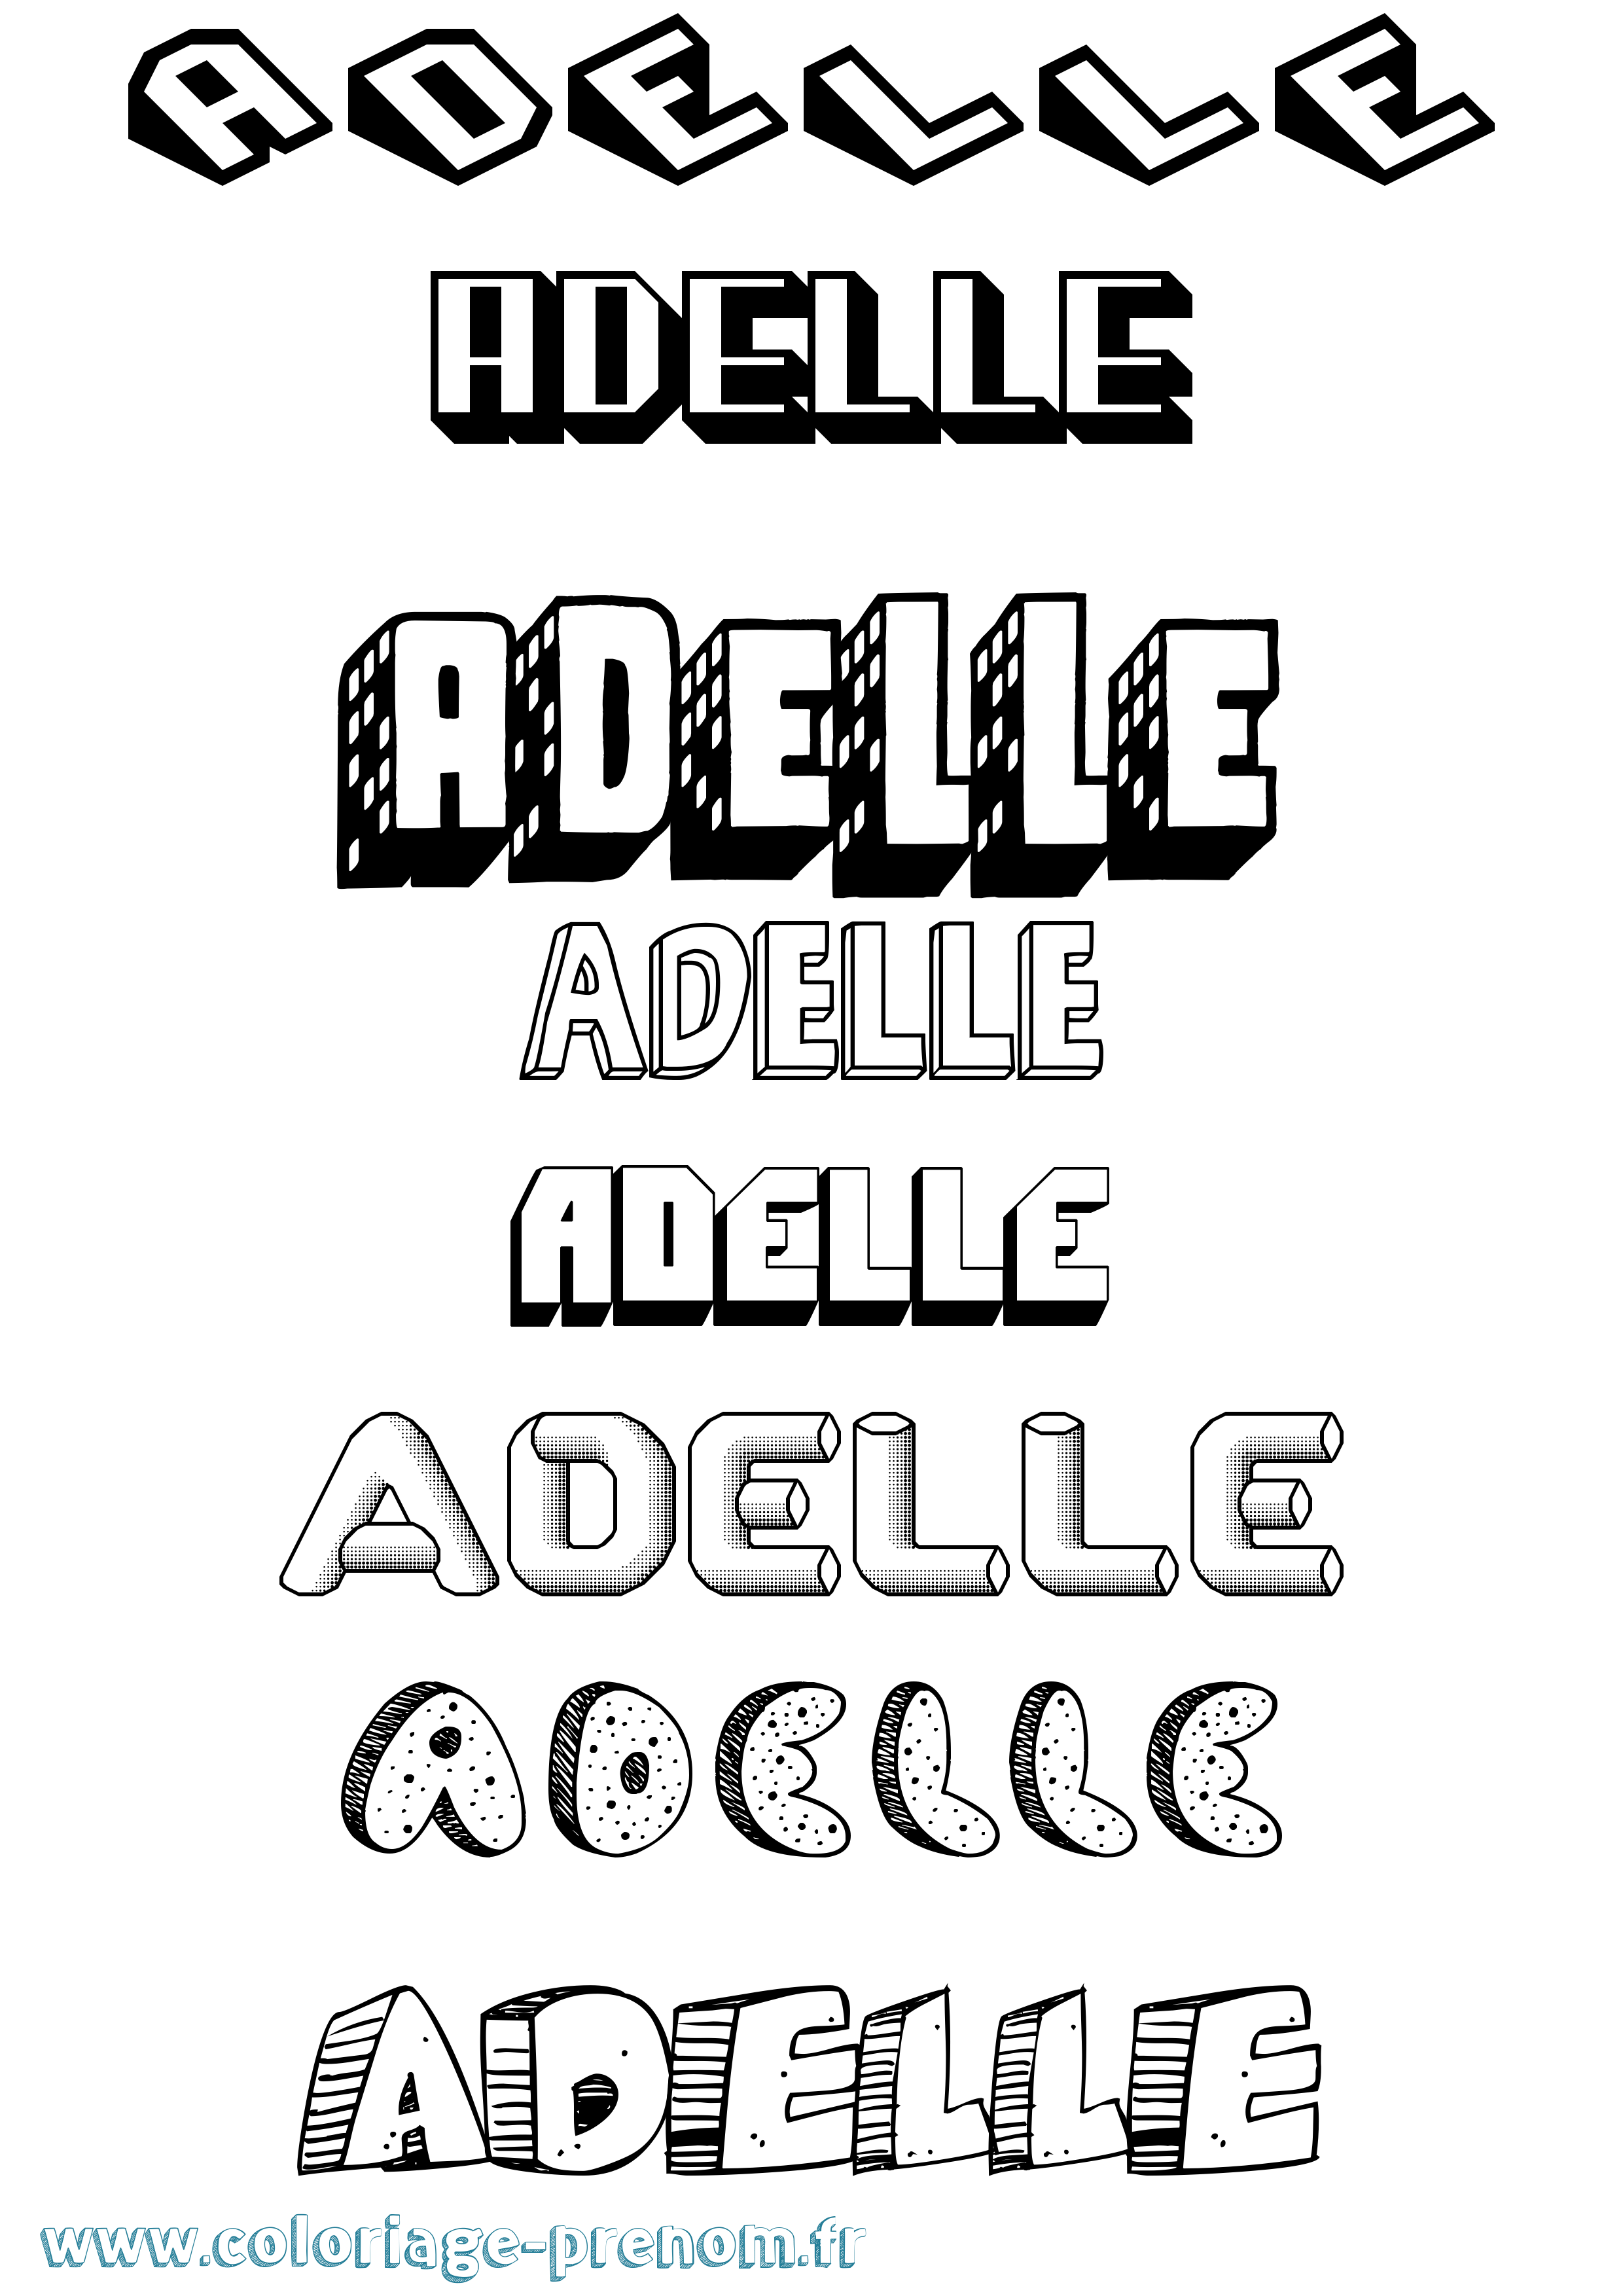 Coloriage prénom Adelle Effet 3D